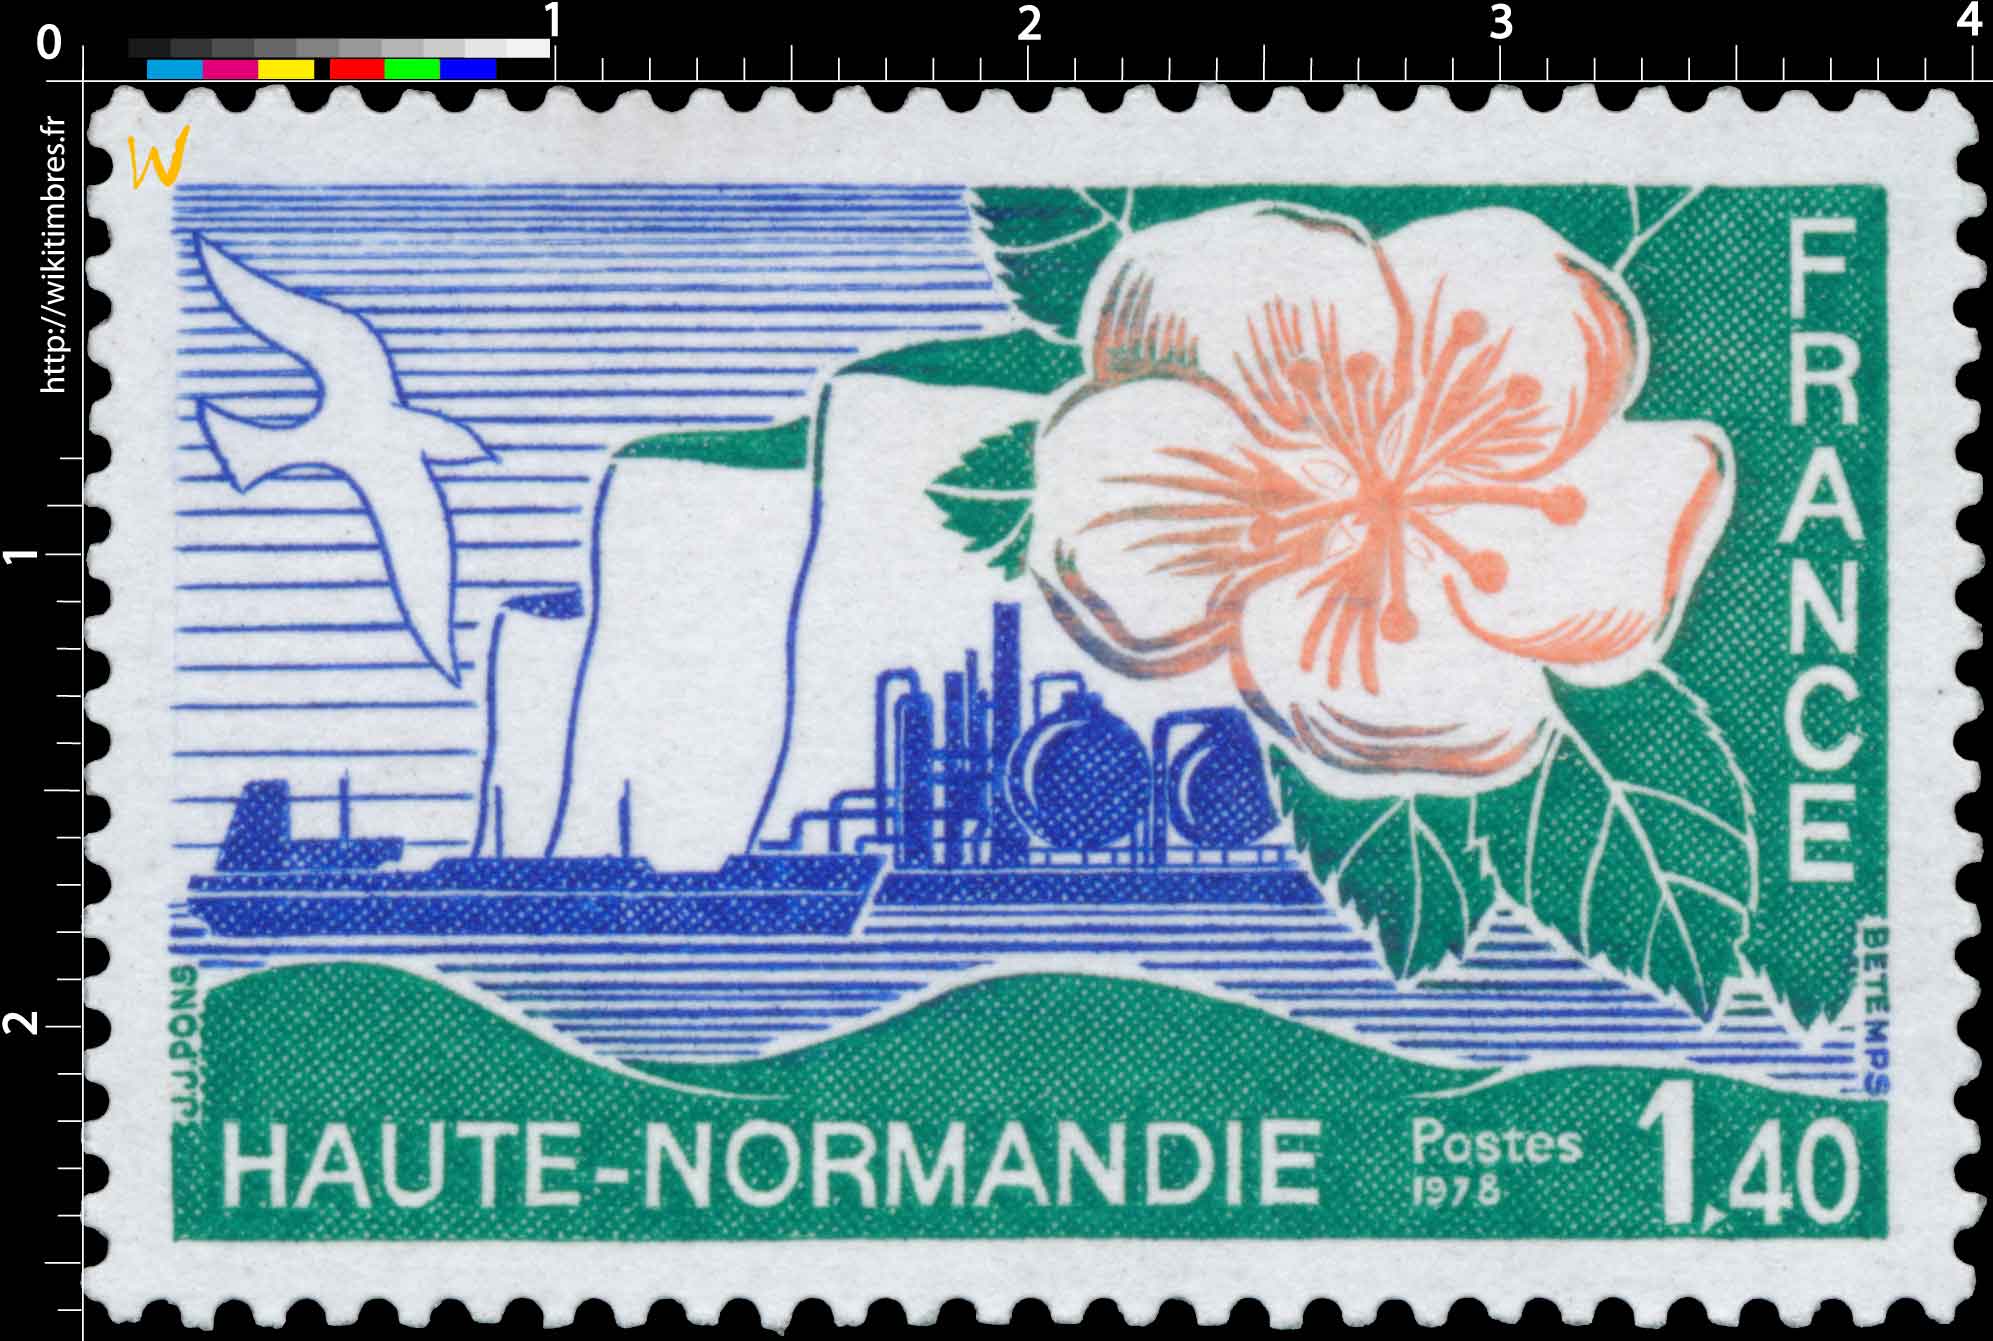 1978 HAUTE-NORMANDIE